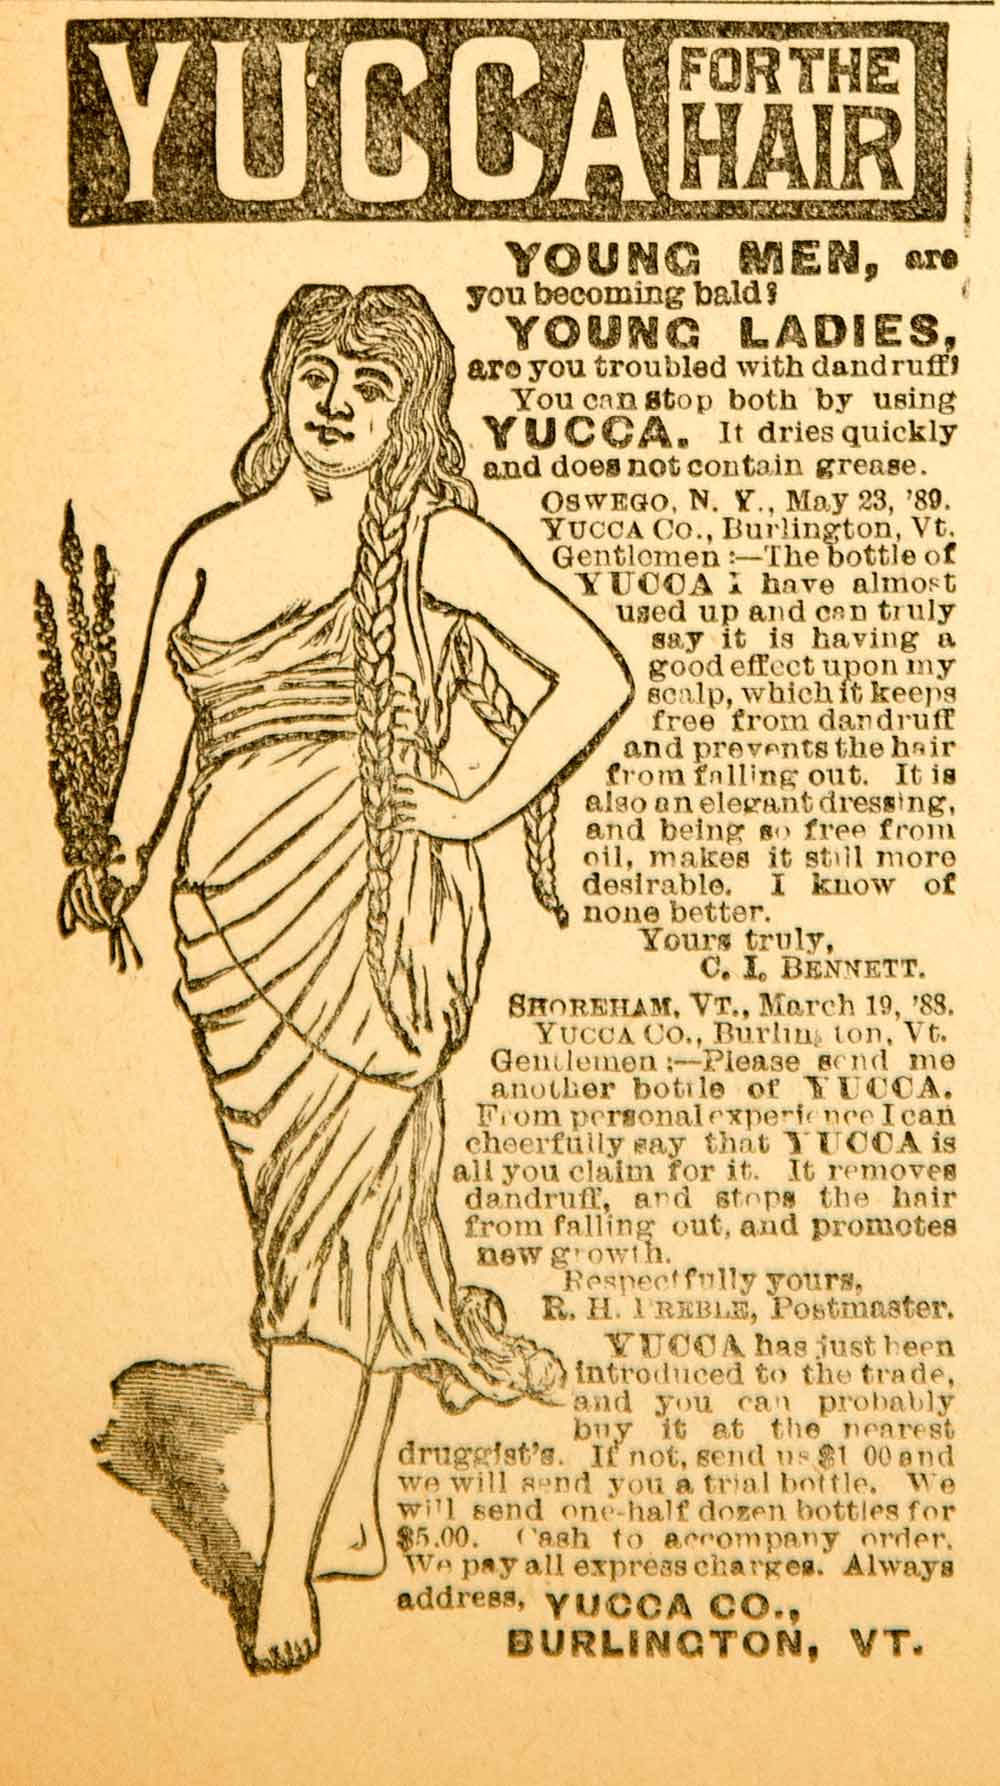 1890 Ad Yucca Hair Care Health Beauty CI Bennett RH Preble Burlington VT AHM1